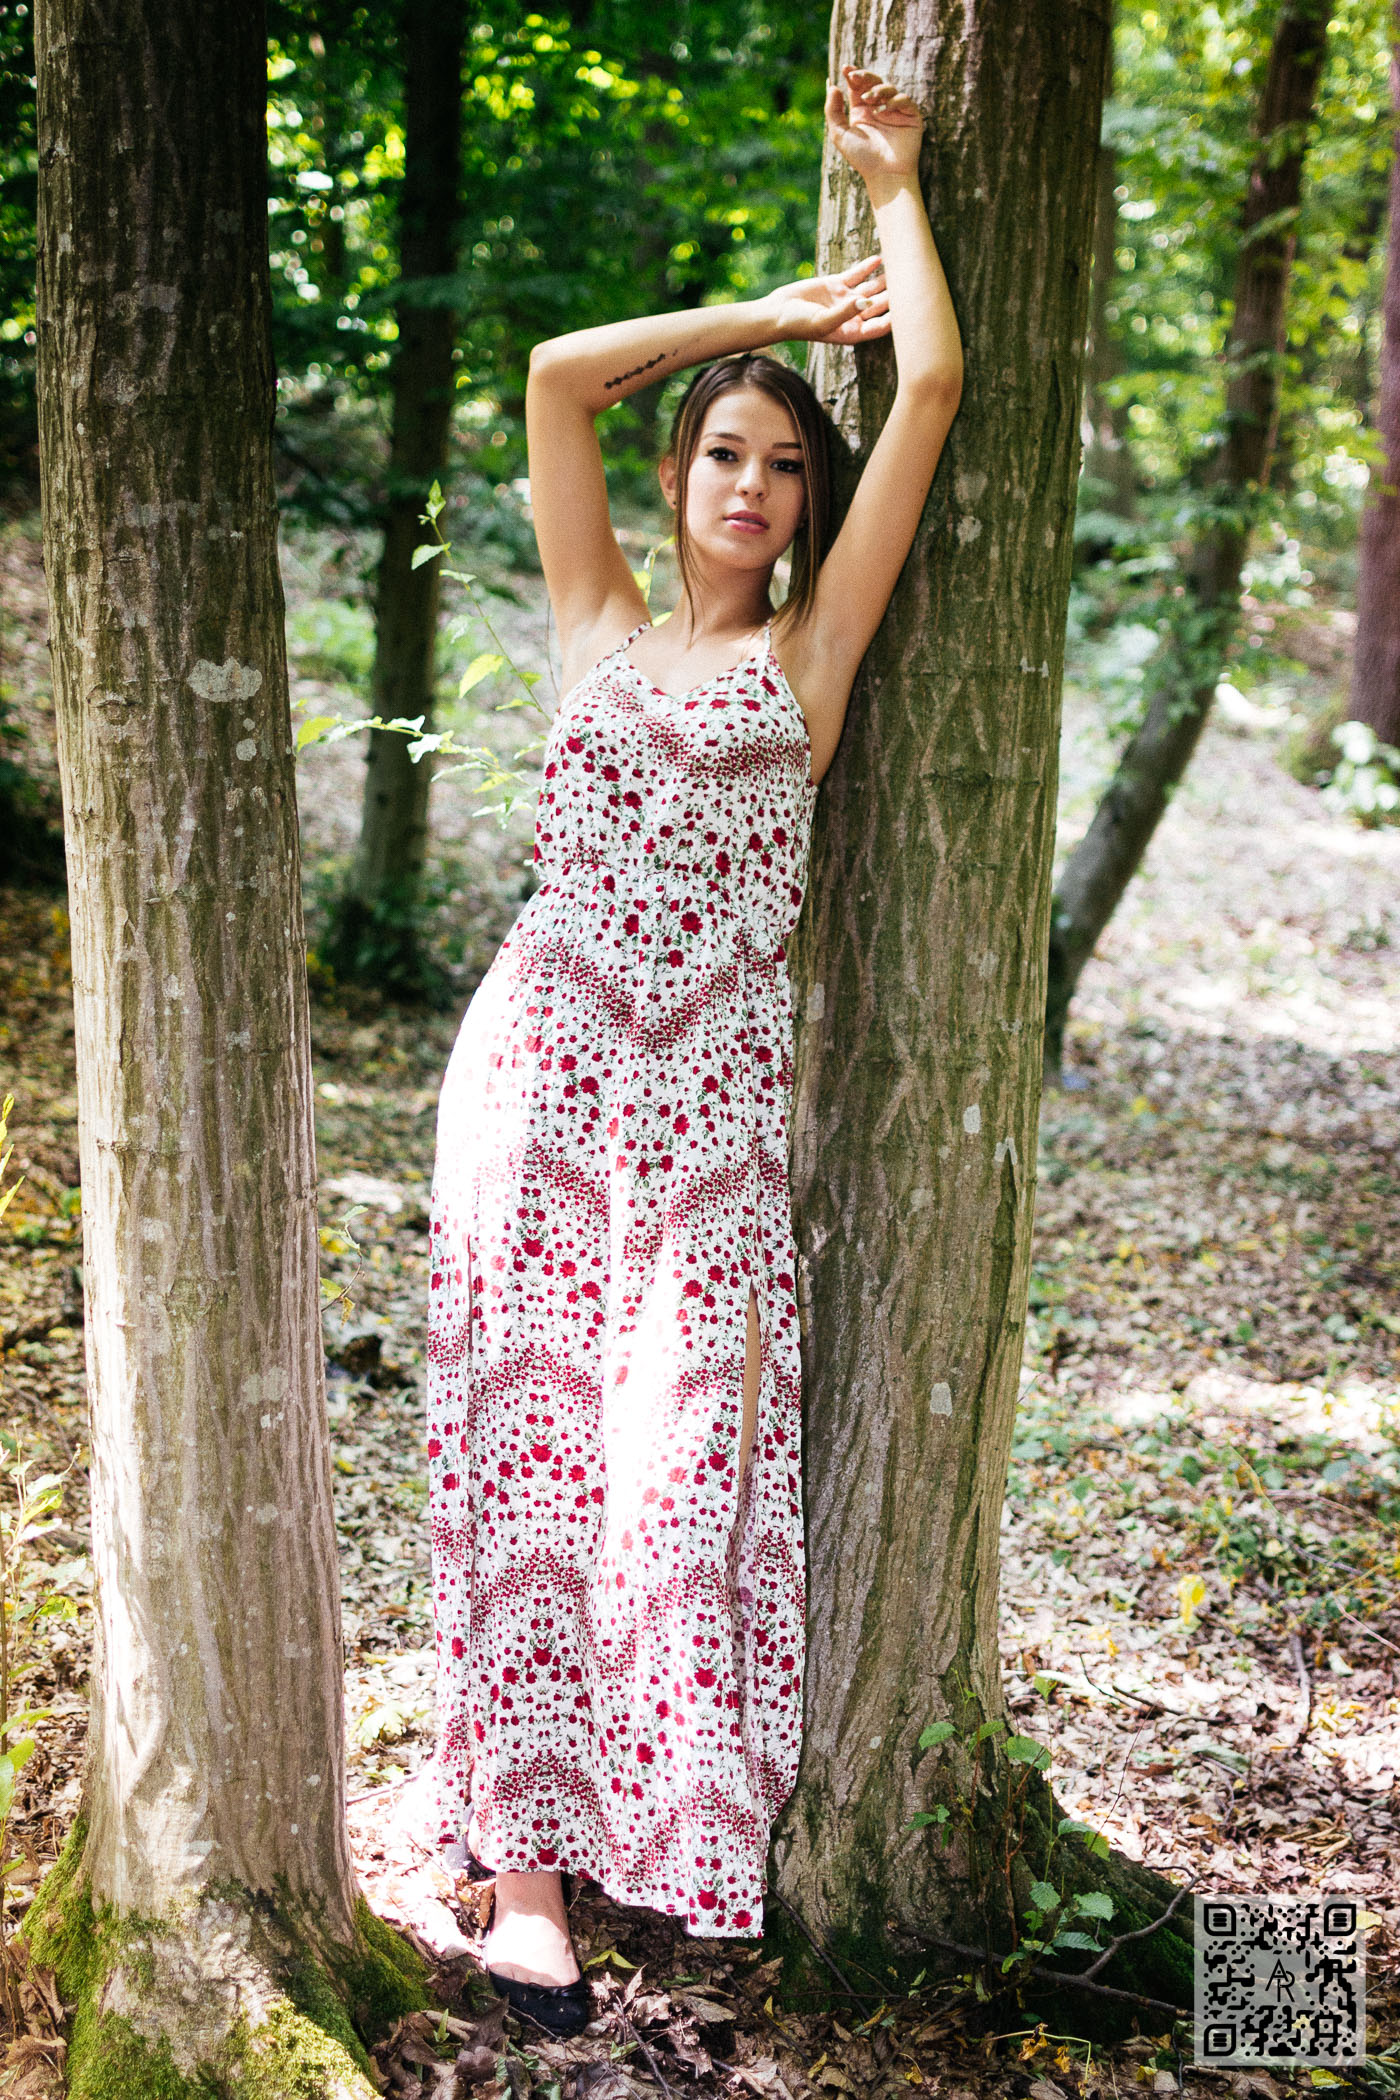 Alexandra M – Floral Dress - Aaron Roberts Photographer - Cluj-Napoca